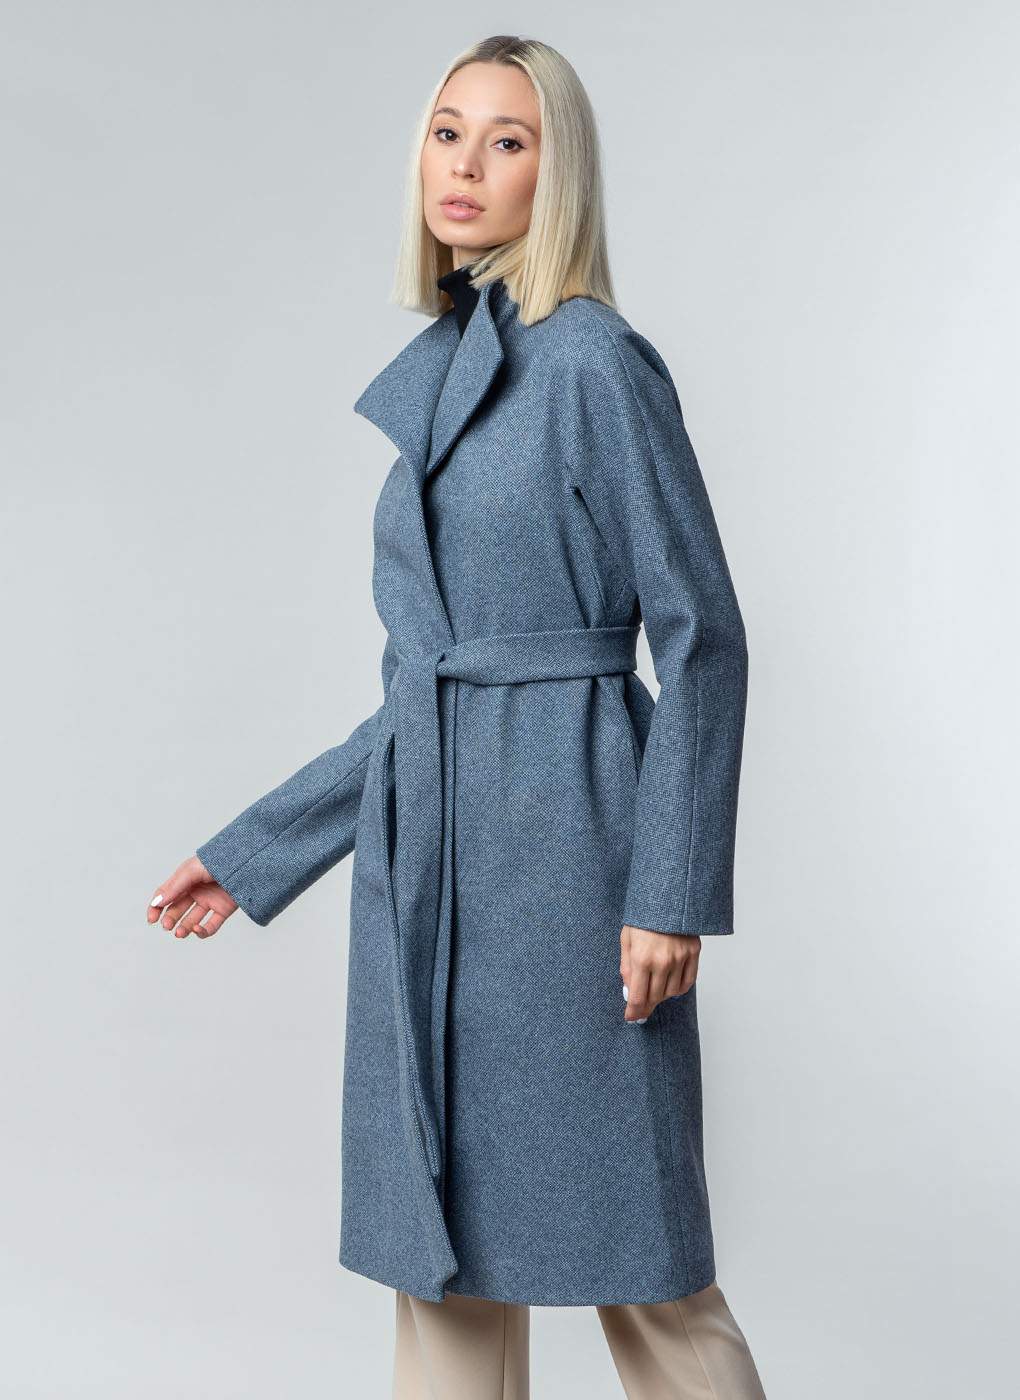 Пальто женское Каляев 51661 синее 54 RU